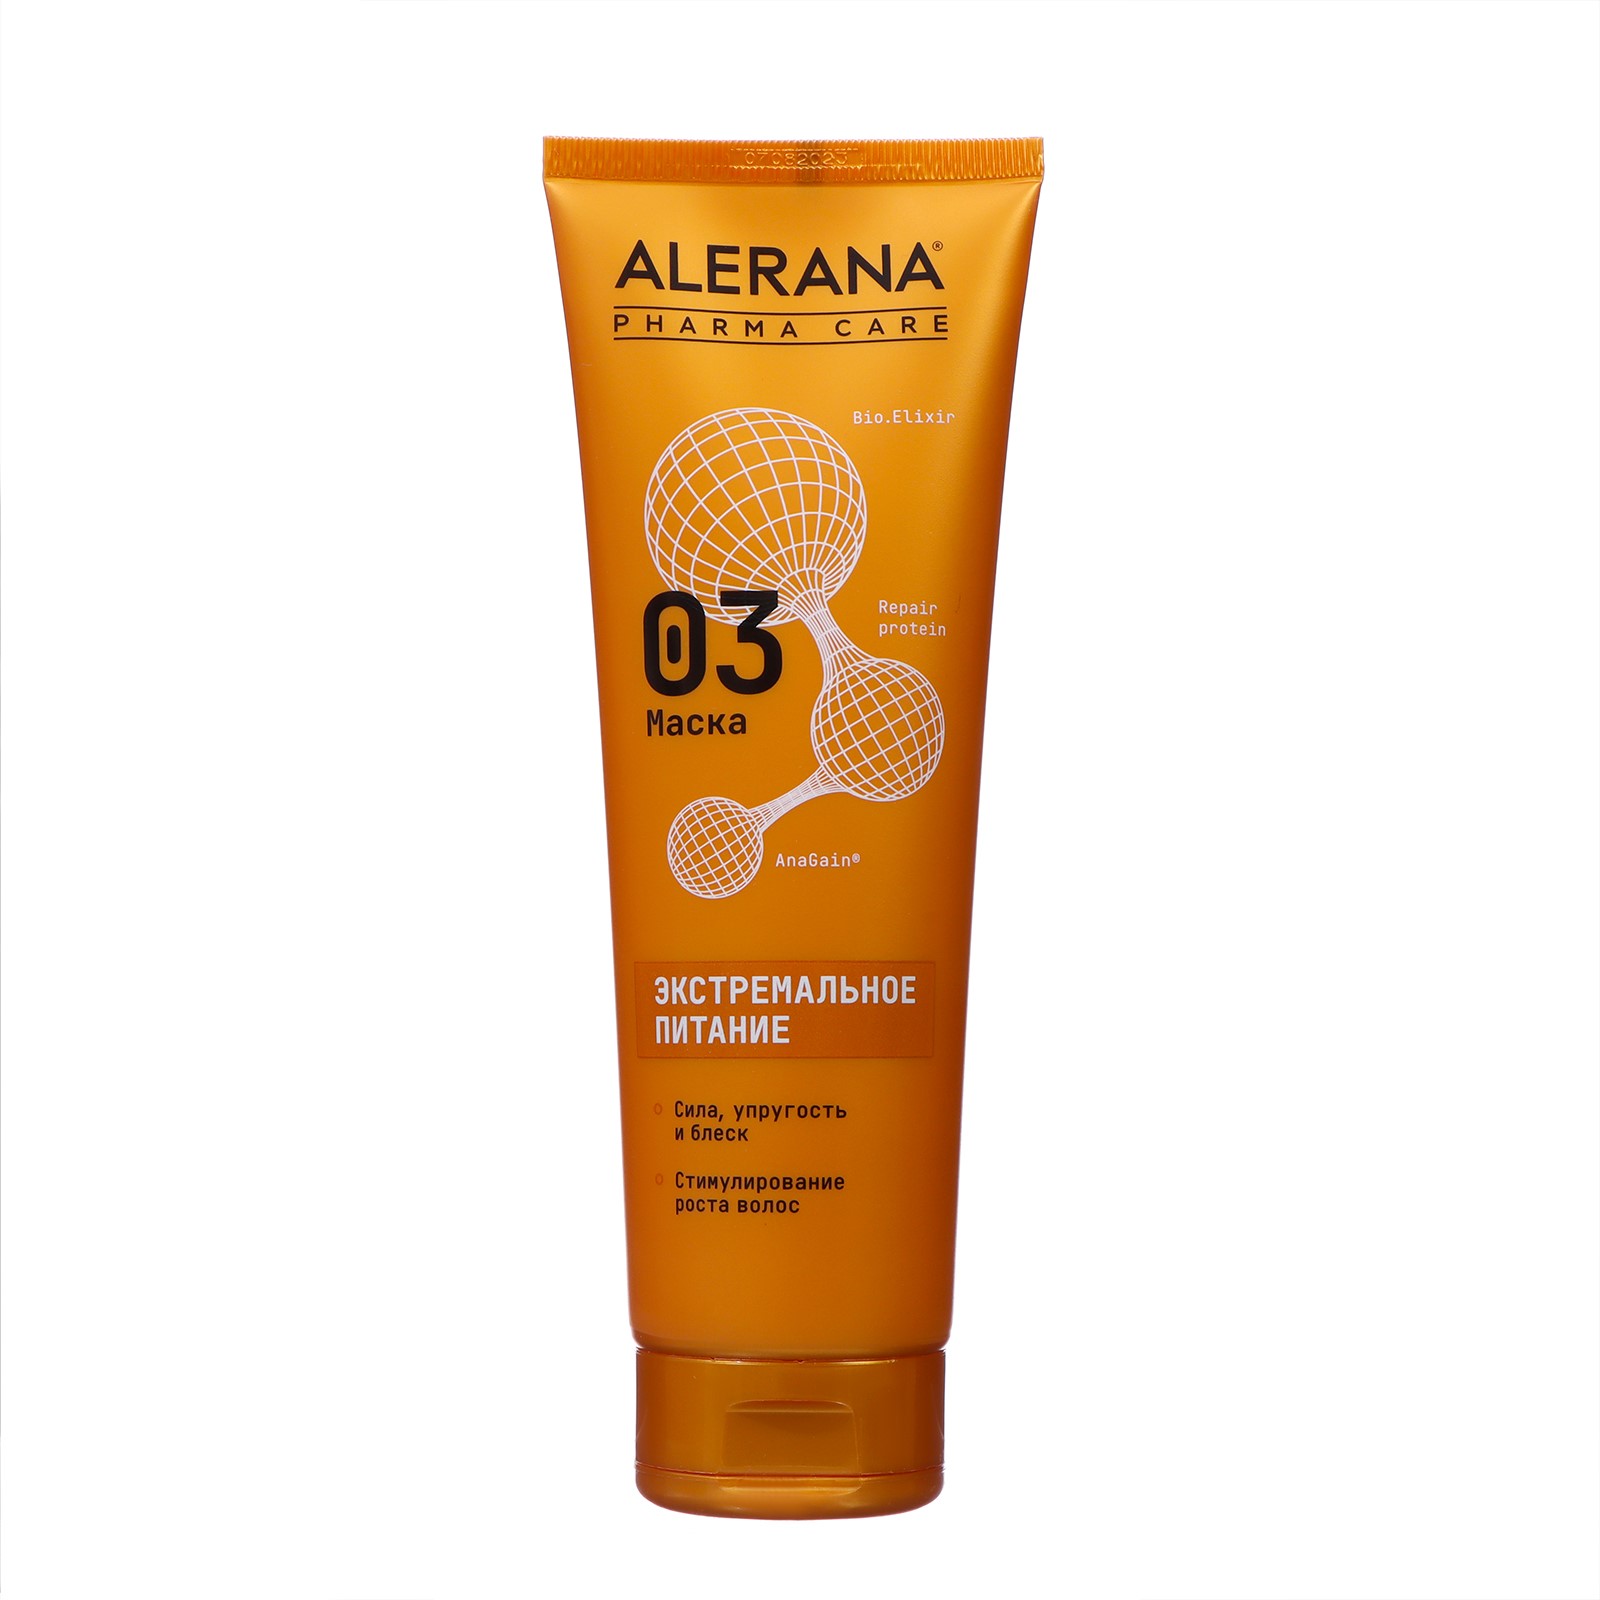 Маска для волос Alerana Pharma care Формула экстремального питания, 260 мл маска увлажняющая для нормальных и сухих волос sp hydrate mask 400 мл